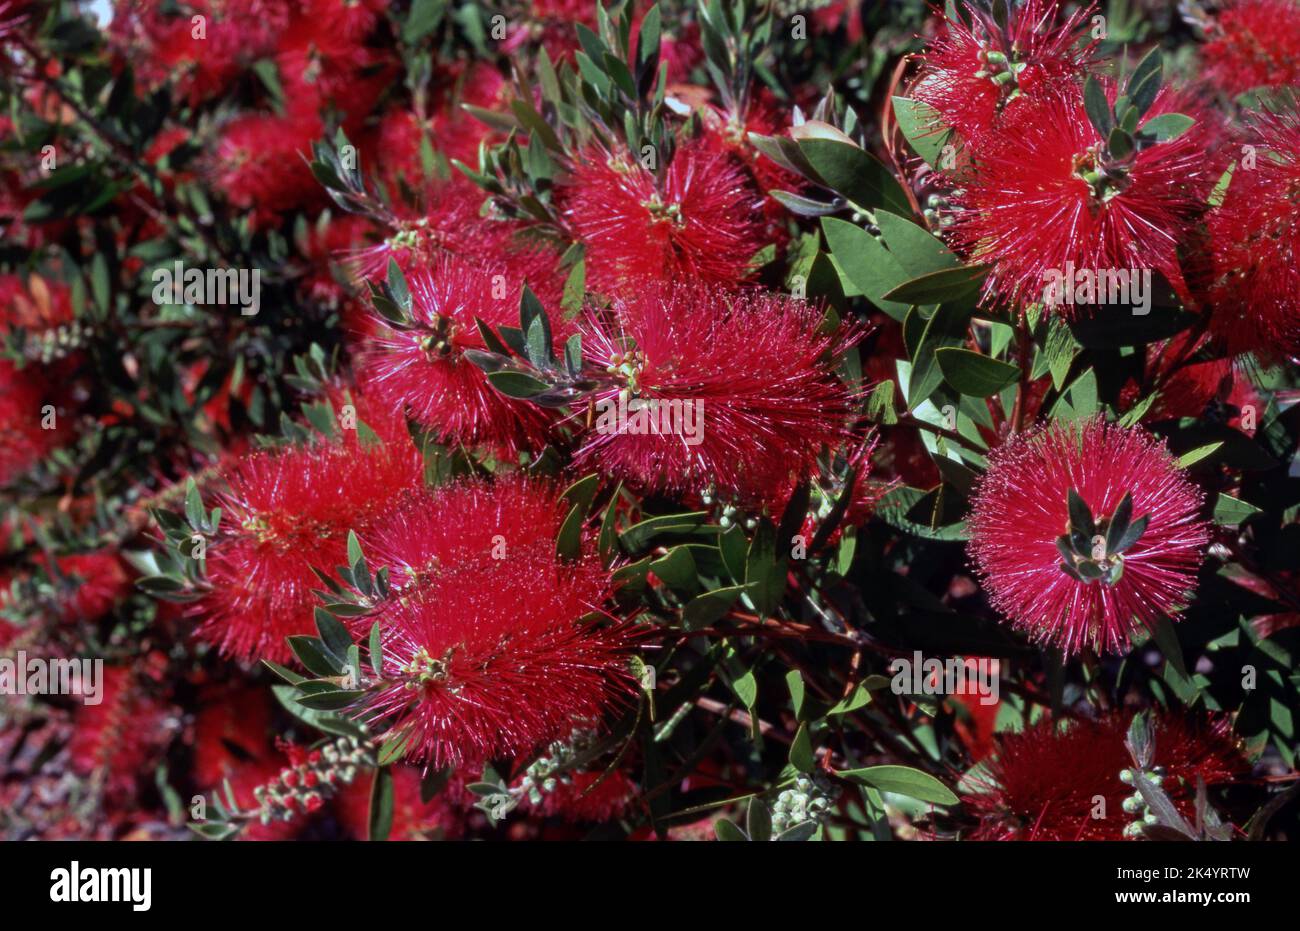 RED BOTTLBRUSH FLOWERS (CALLISTEMON) Stock Photo